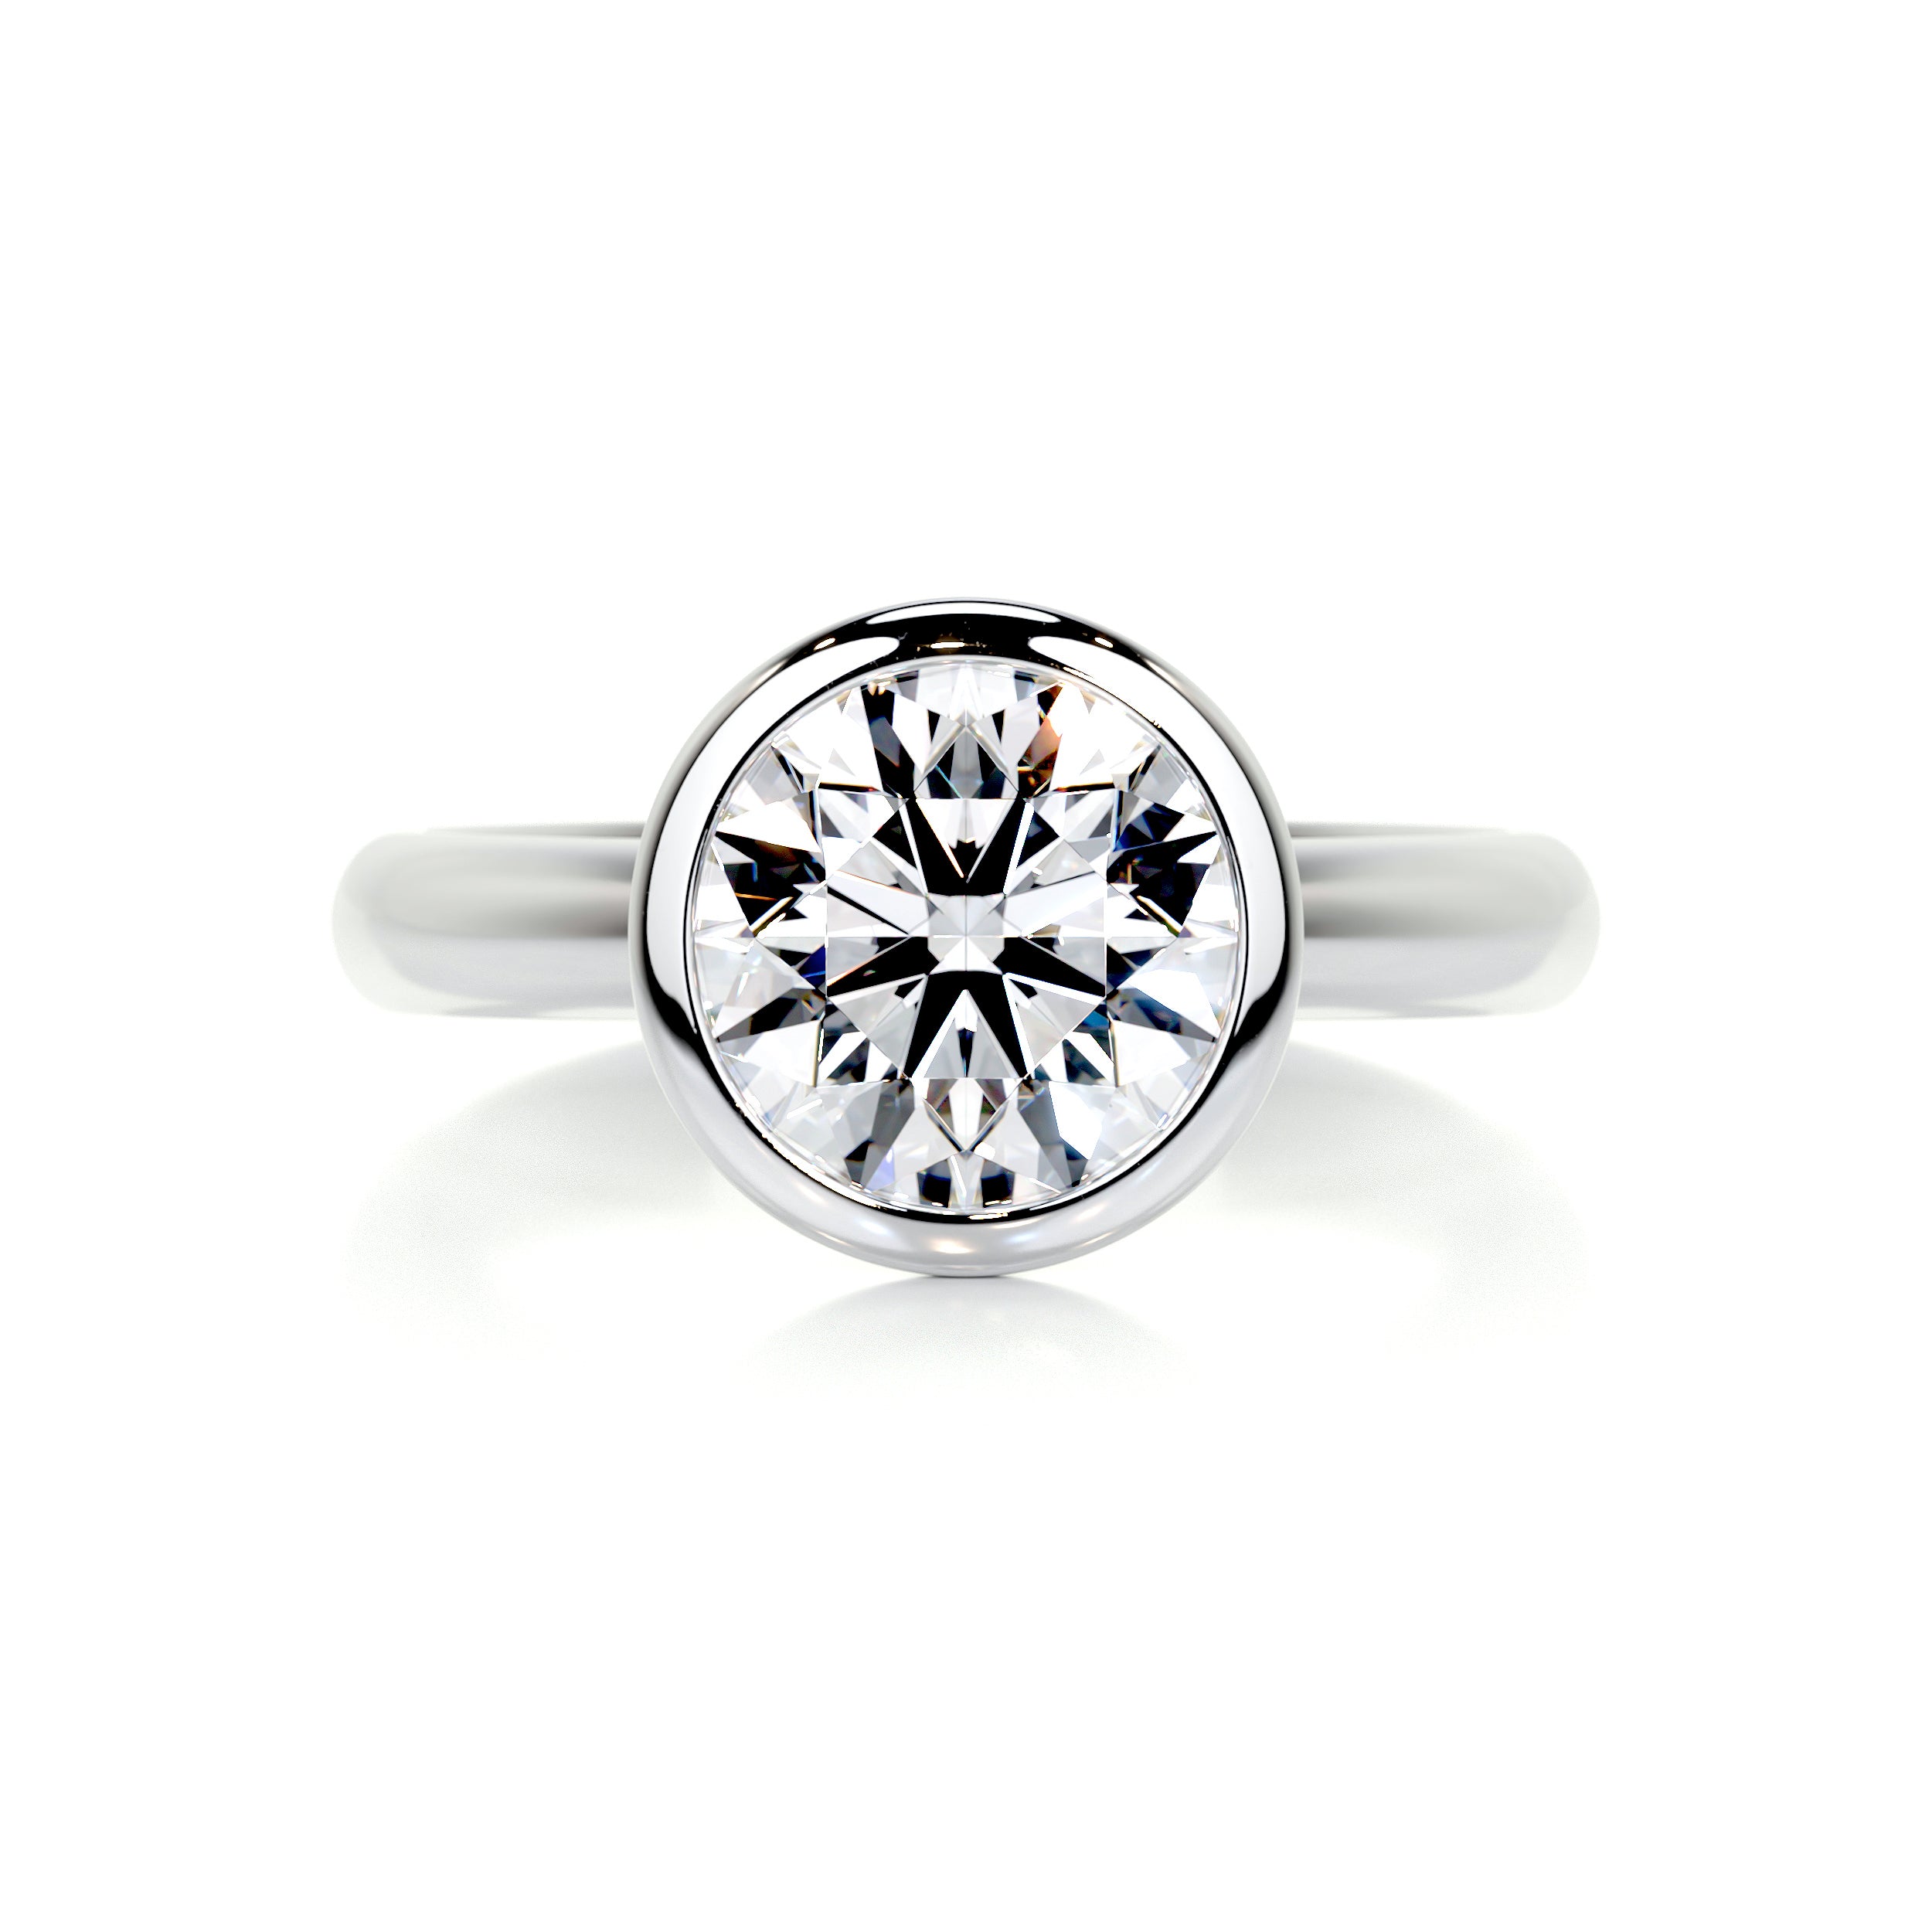 Kaylee Diamond Engagement Ring   (3 Carat) -Platinum